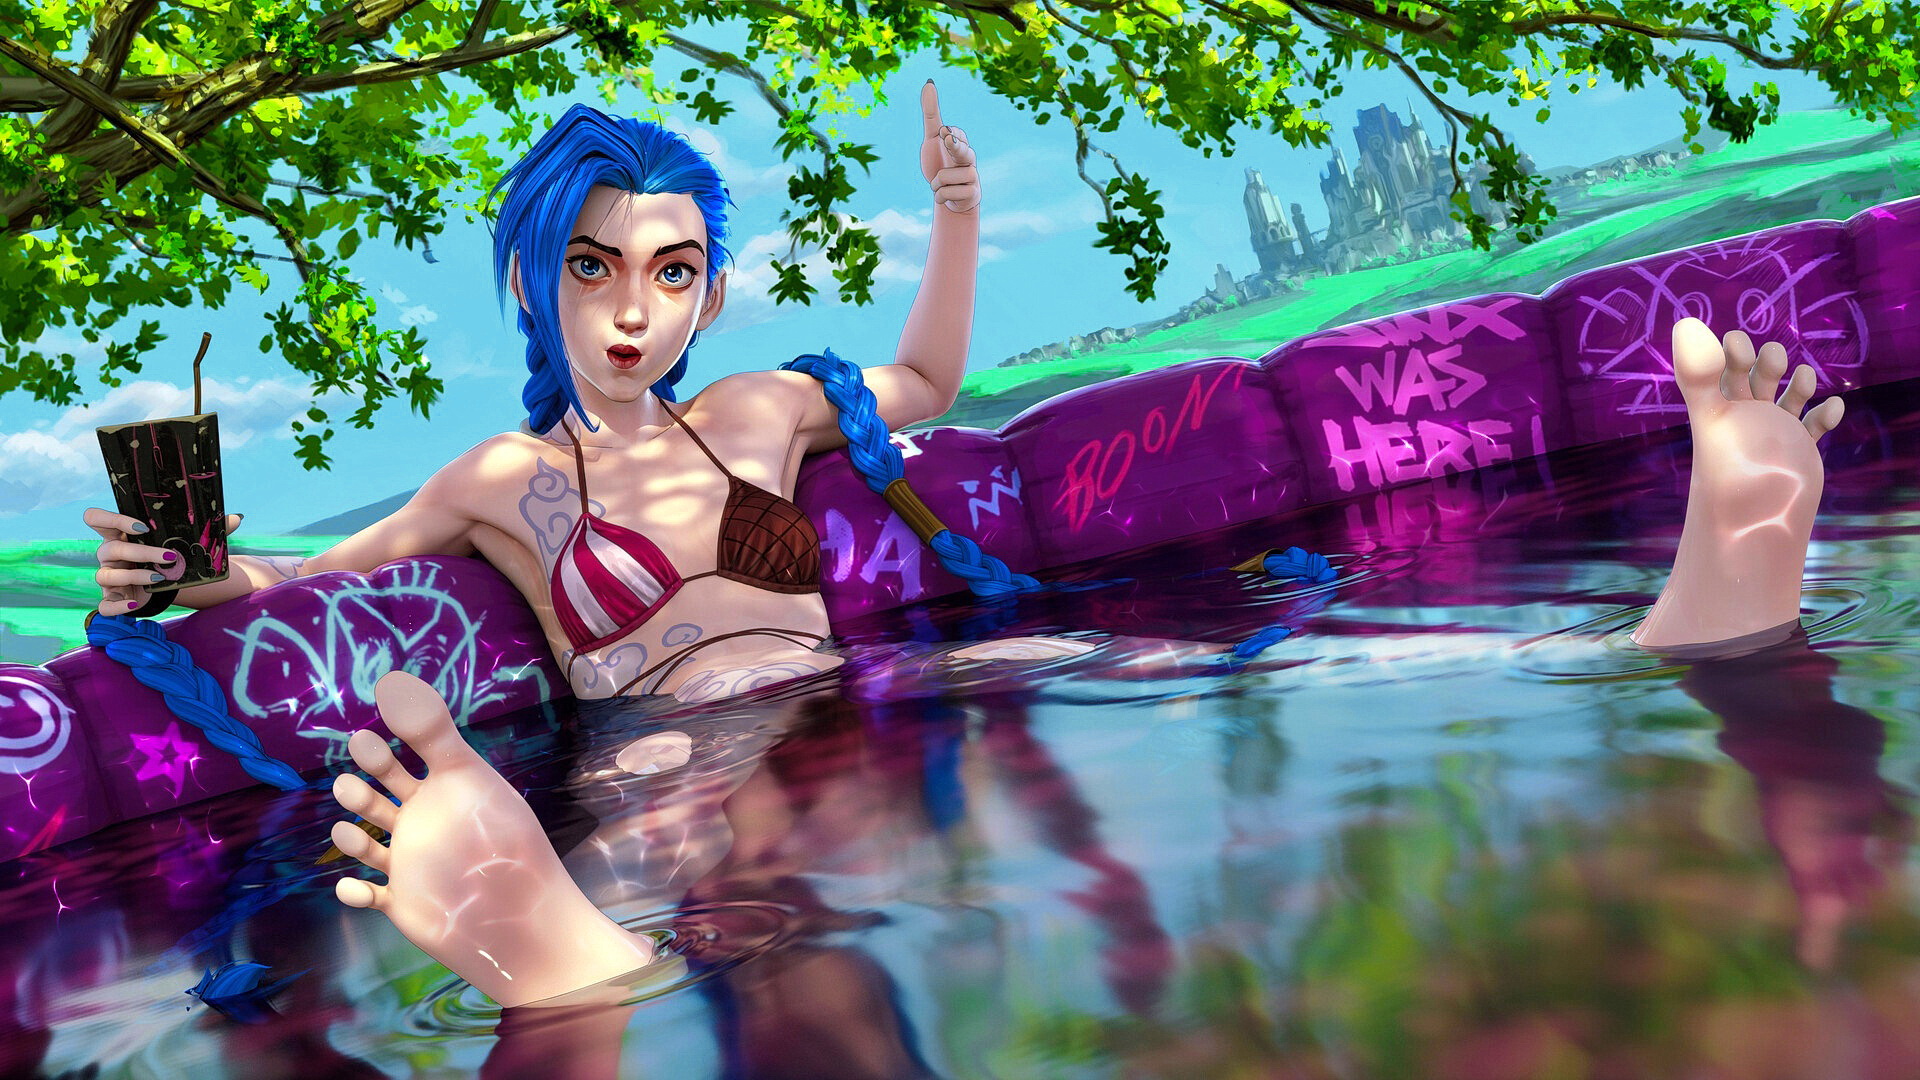 Бесплатное фото Девушка с синими волосами сидит в бассейне и держит стакан в руке